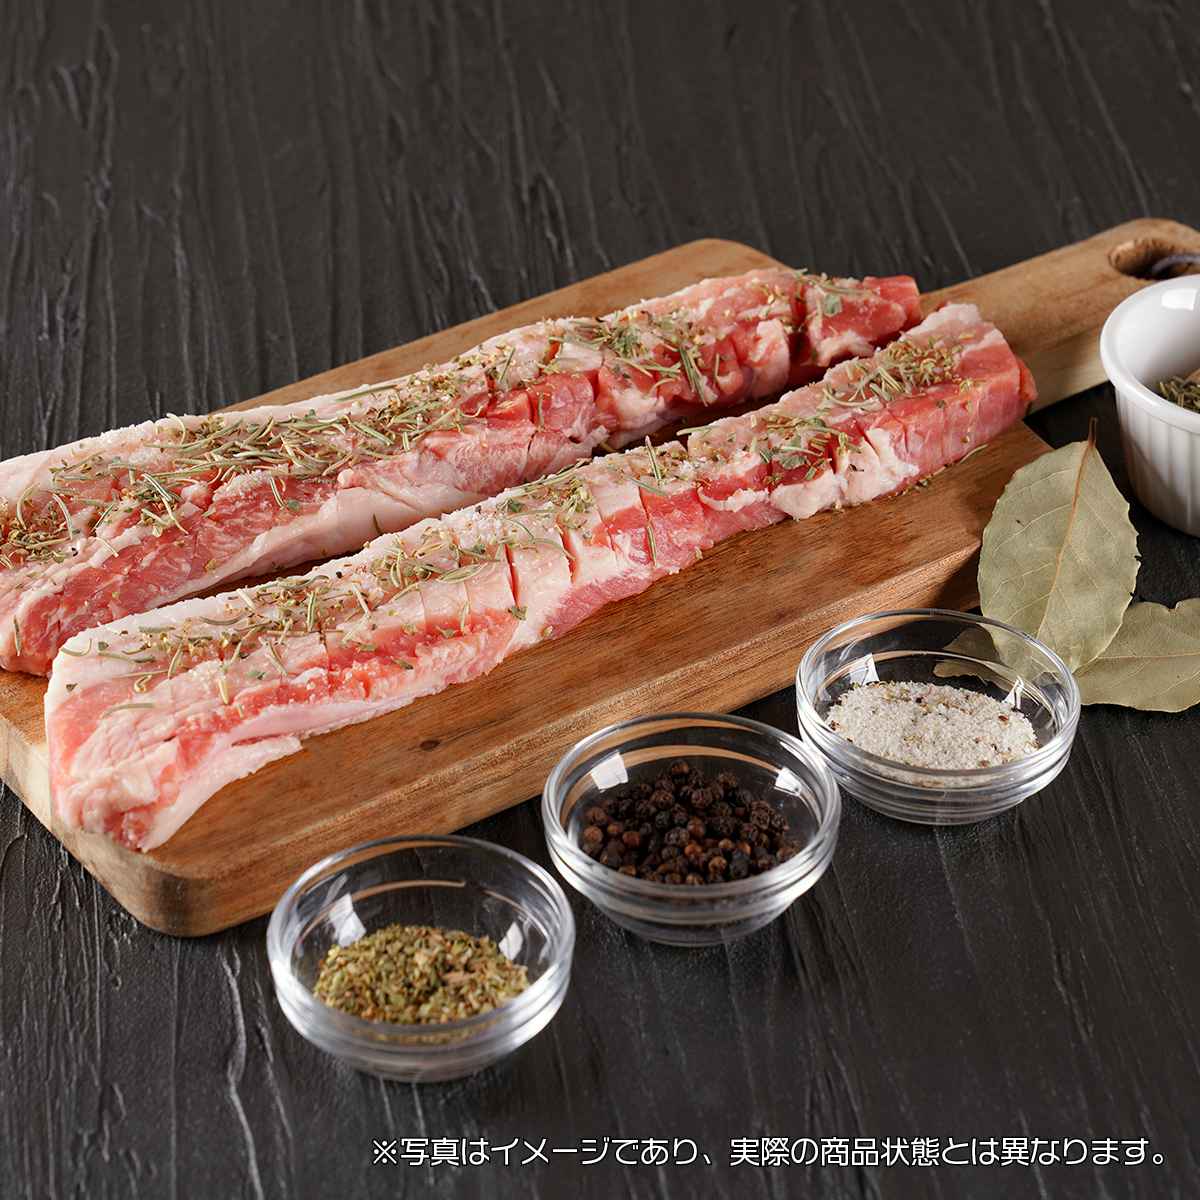 韓国広場 自家製 ハーブソルト豚肉 (バラ)